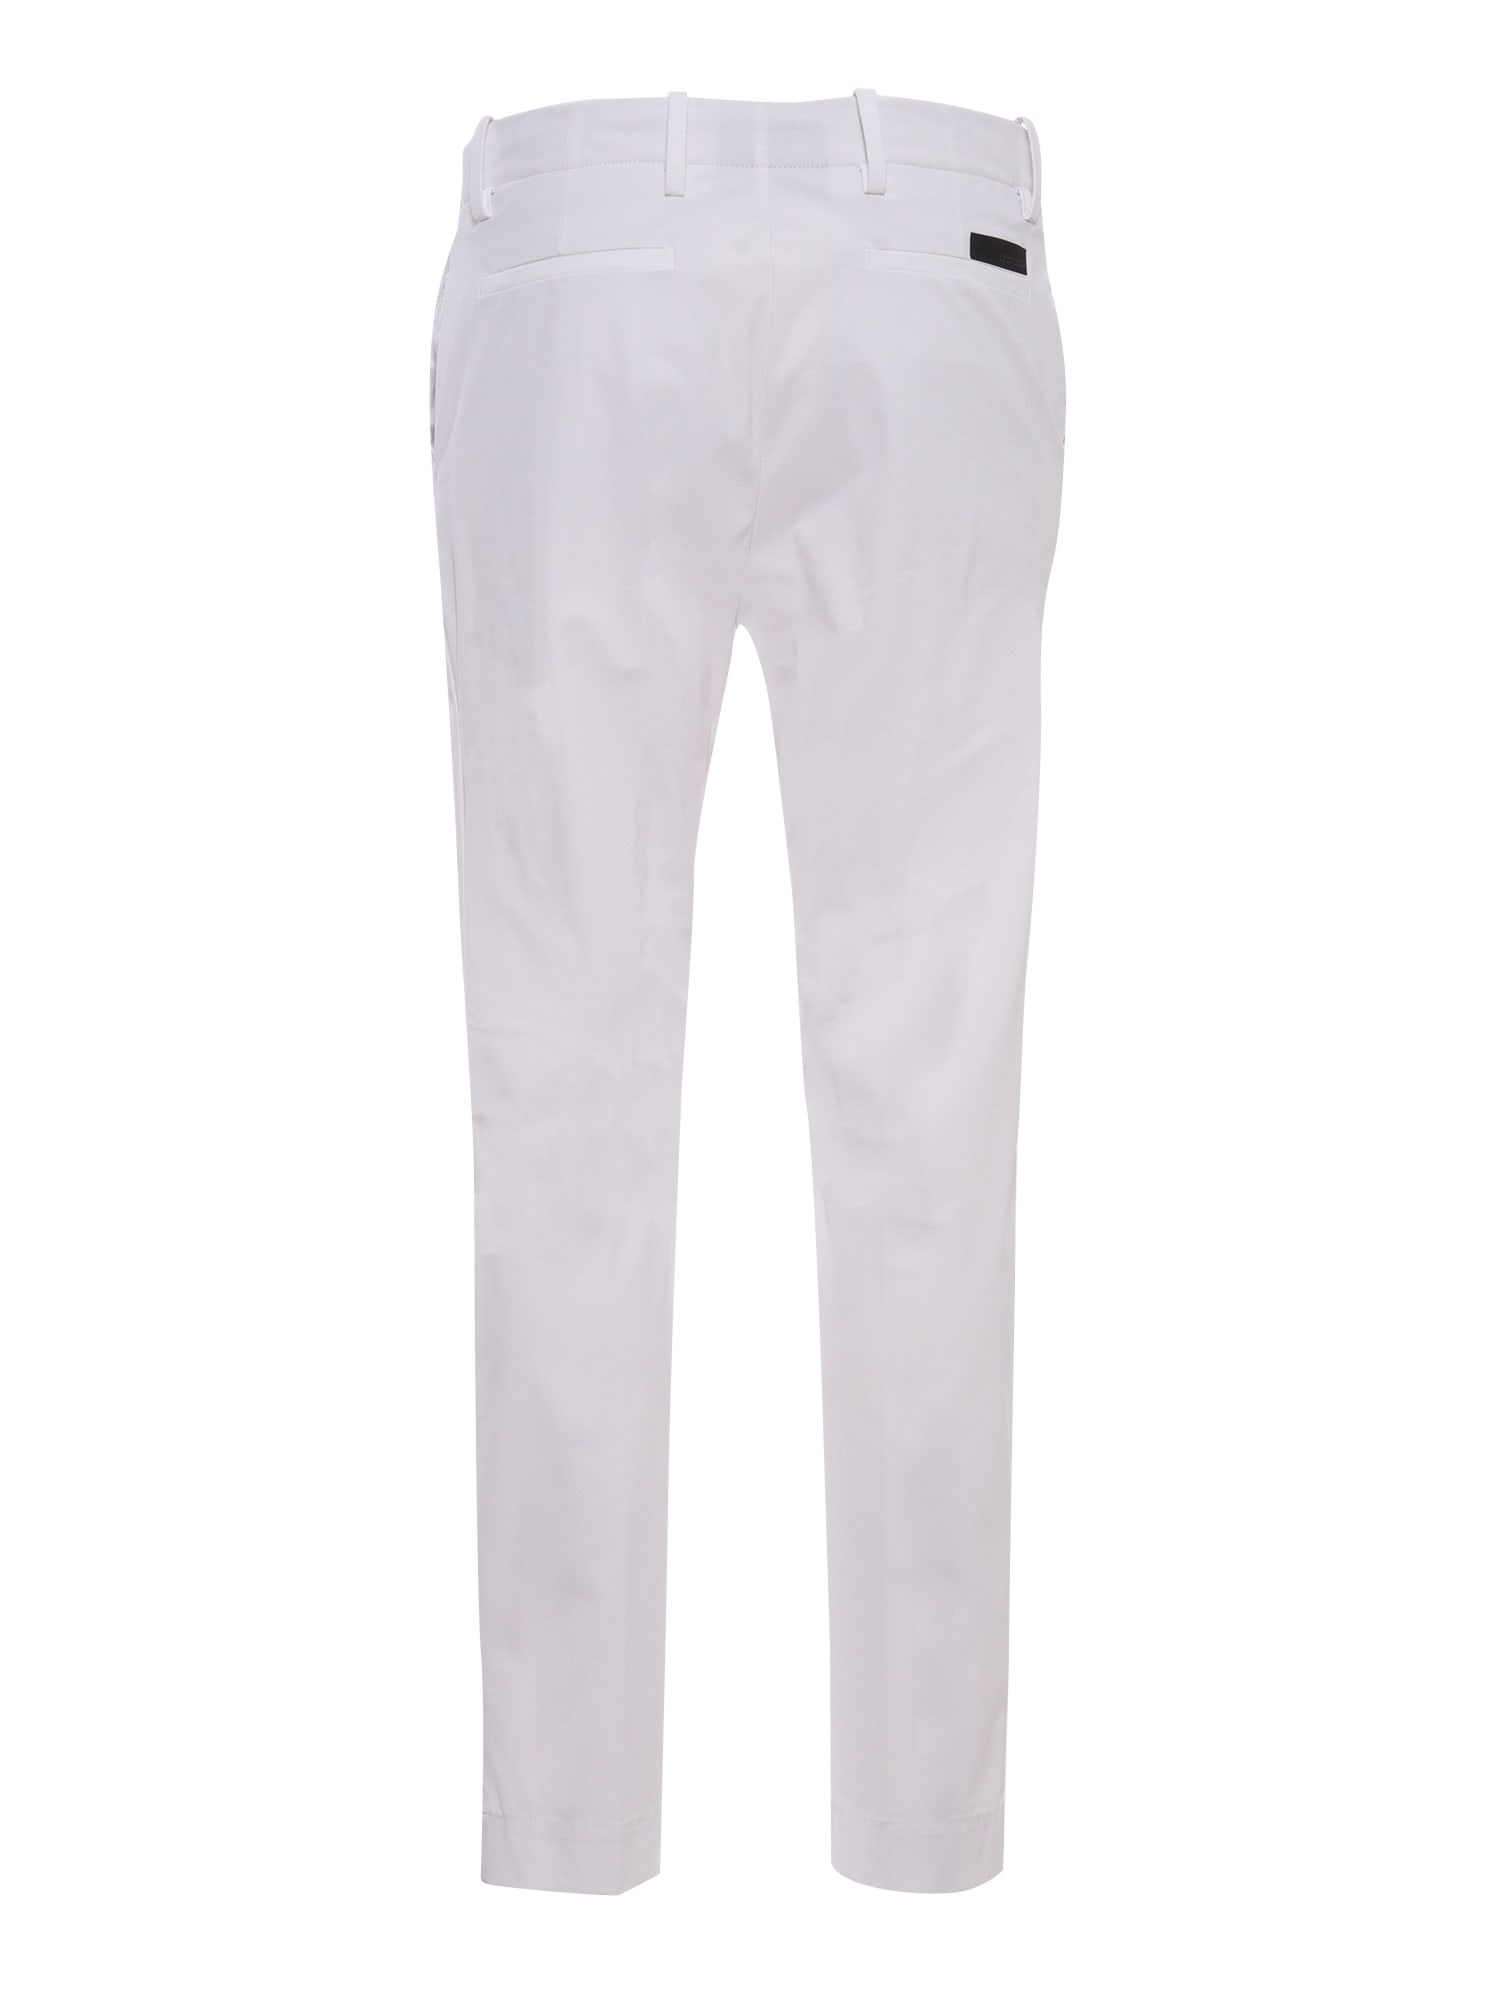 Shop Rrd - Roberto Ricci Design White Chino Trousers